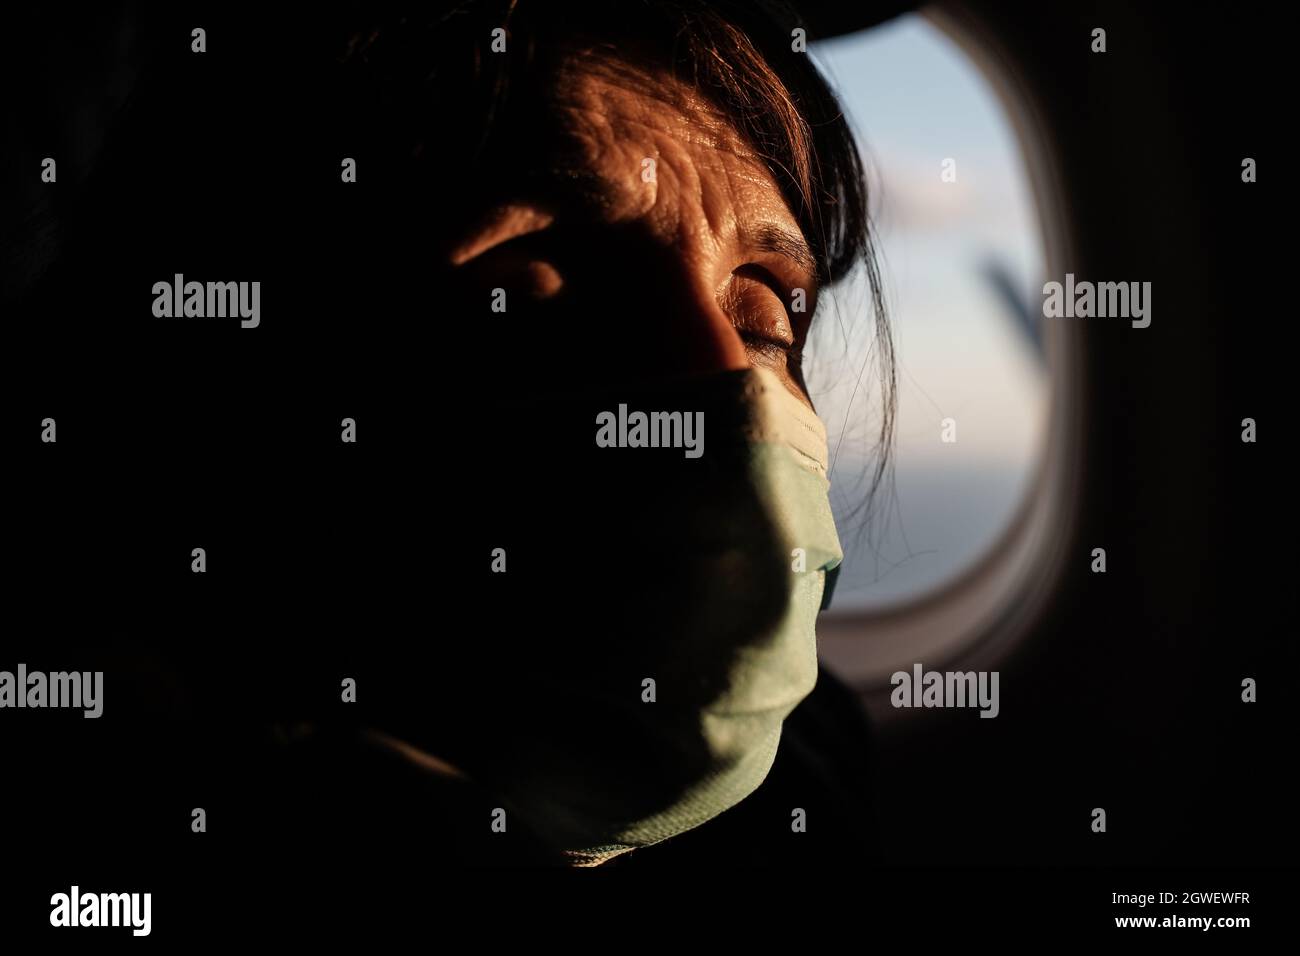 Pittsburgh, Pennsylvanie, États-Unis. 1er octobre 2021. Une femme se détend les yeux fermés à bord d'un vol Delta Airlines de Pittsburgh à New York. Crédit : NIR Amon/Alamy Live News. Banque D'Images